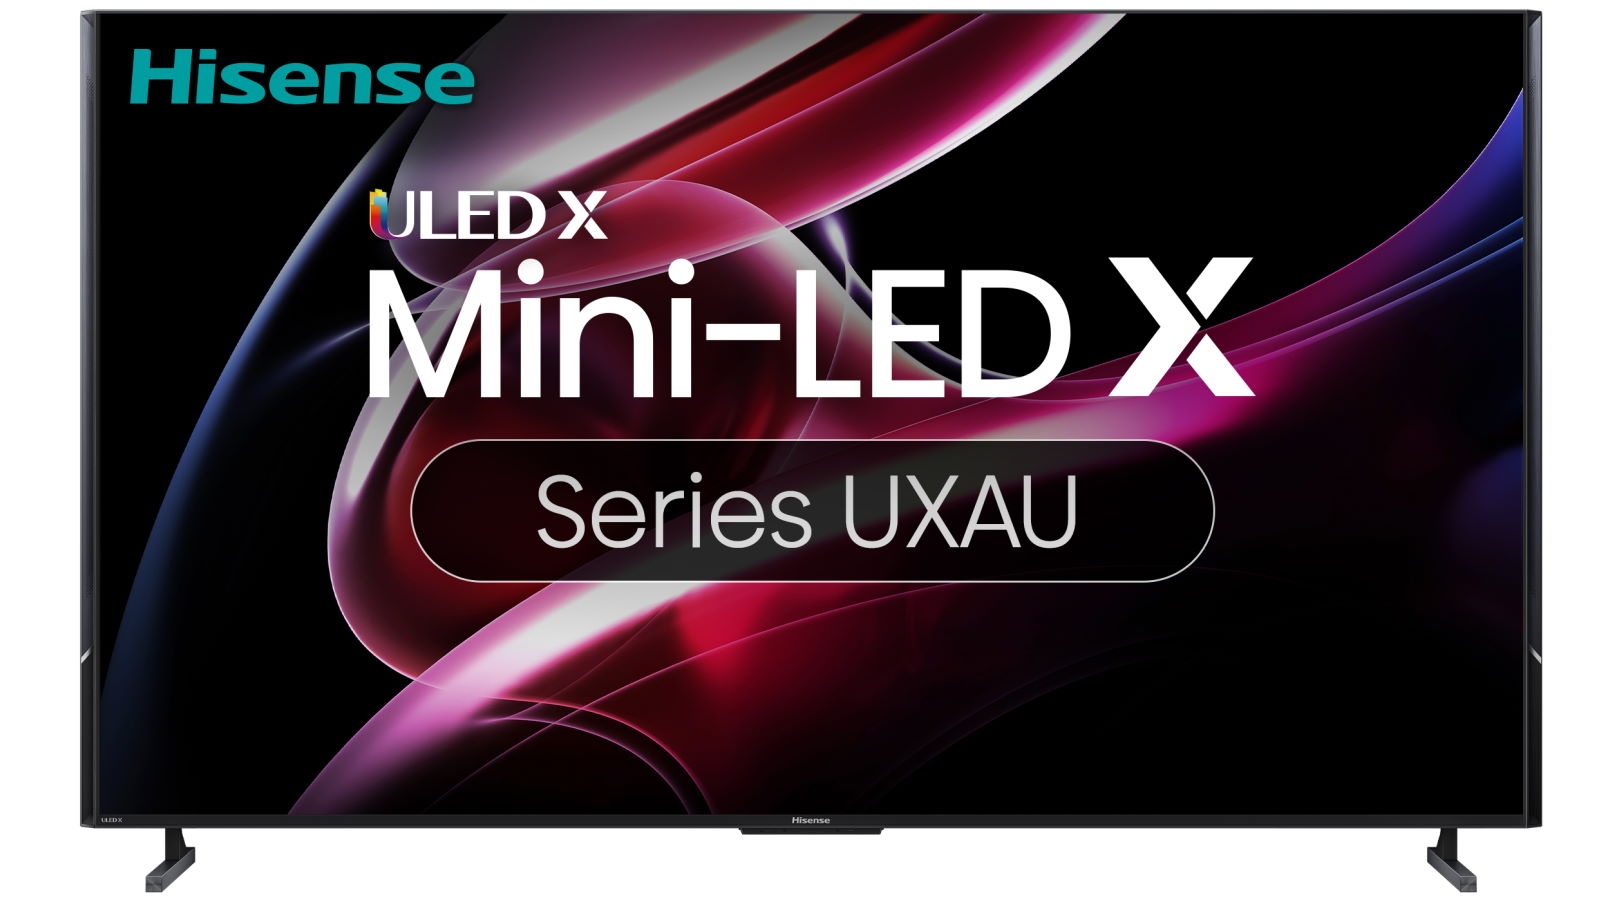 Hisense 55 U6KAU Mini-LED 4K Smart TV [2023] - JB Hi-Fi